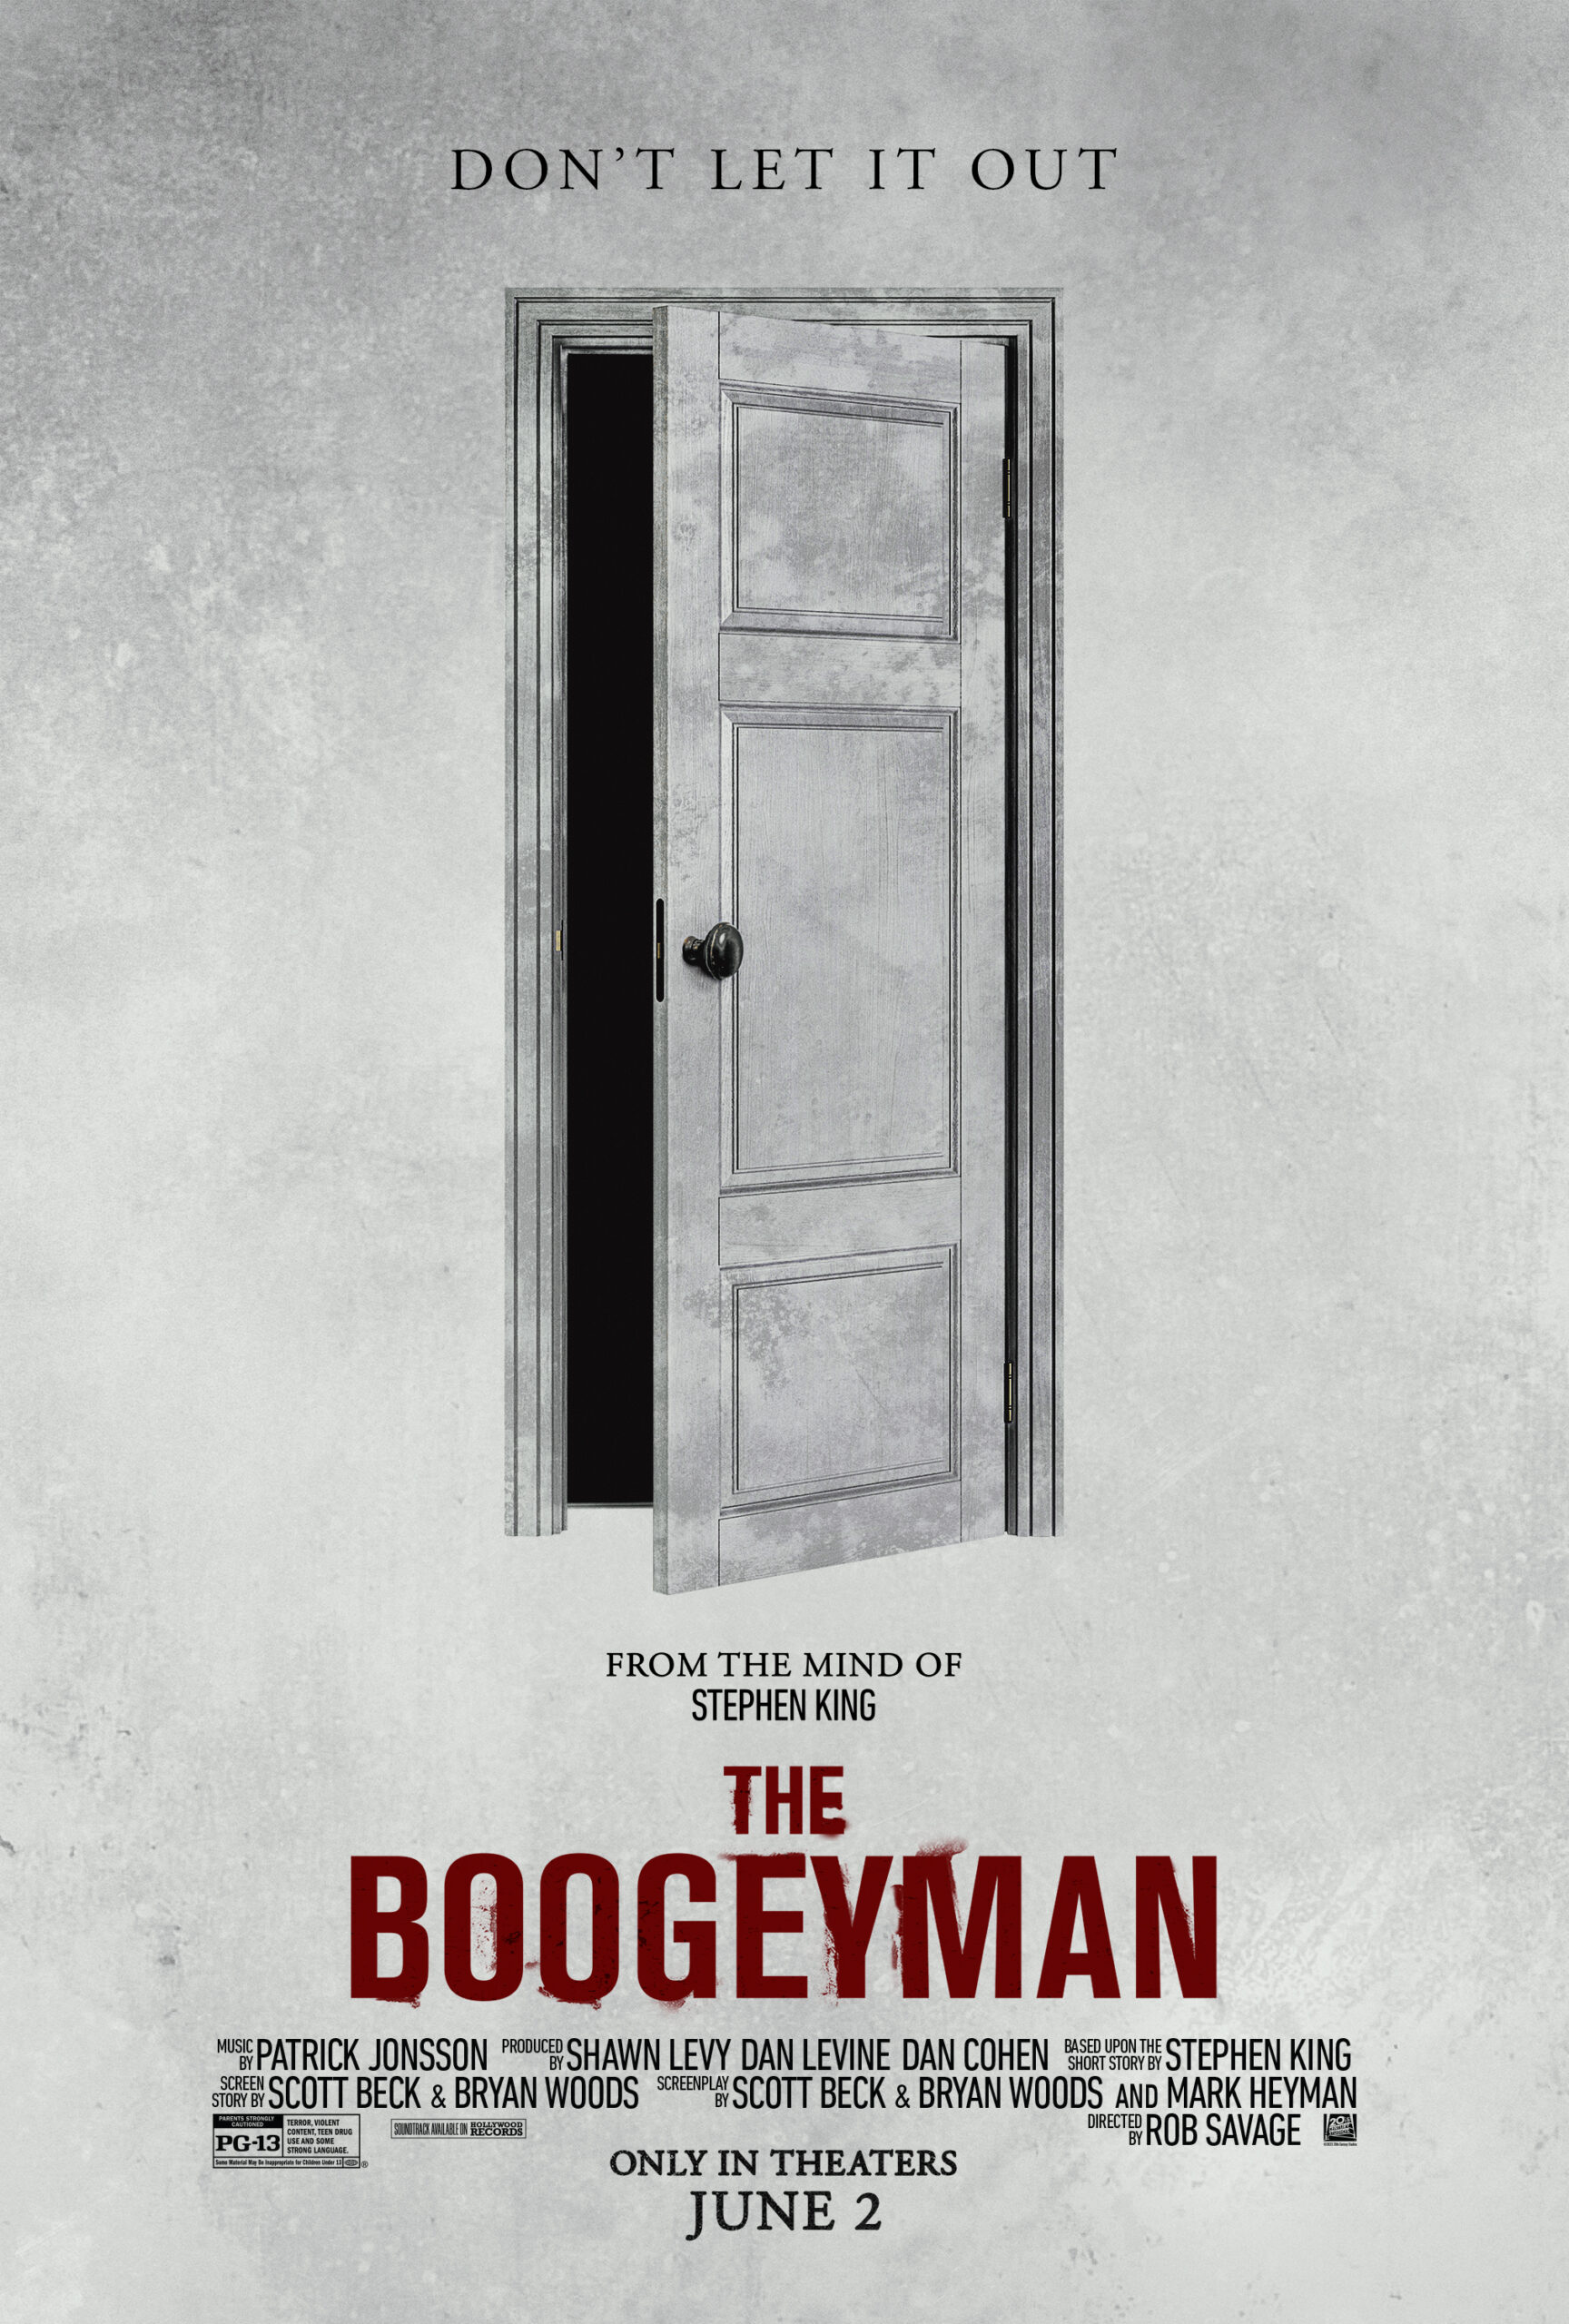 The Boogeyman: il trailer dell’horror tratto da Stephen King